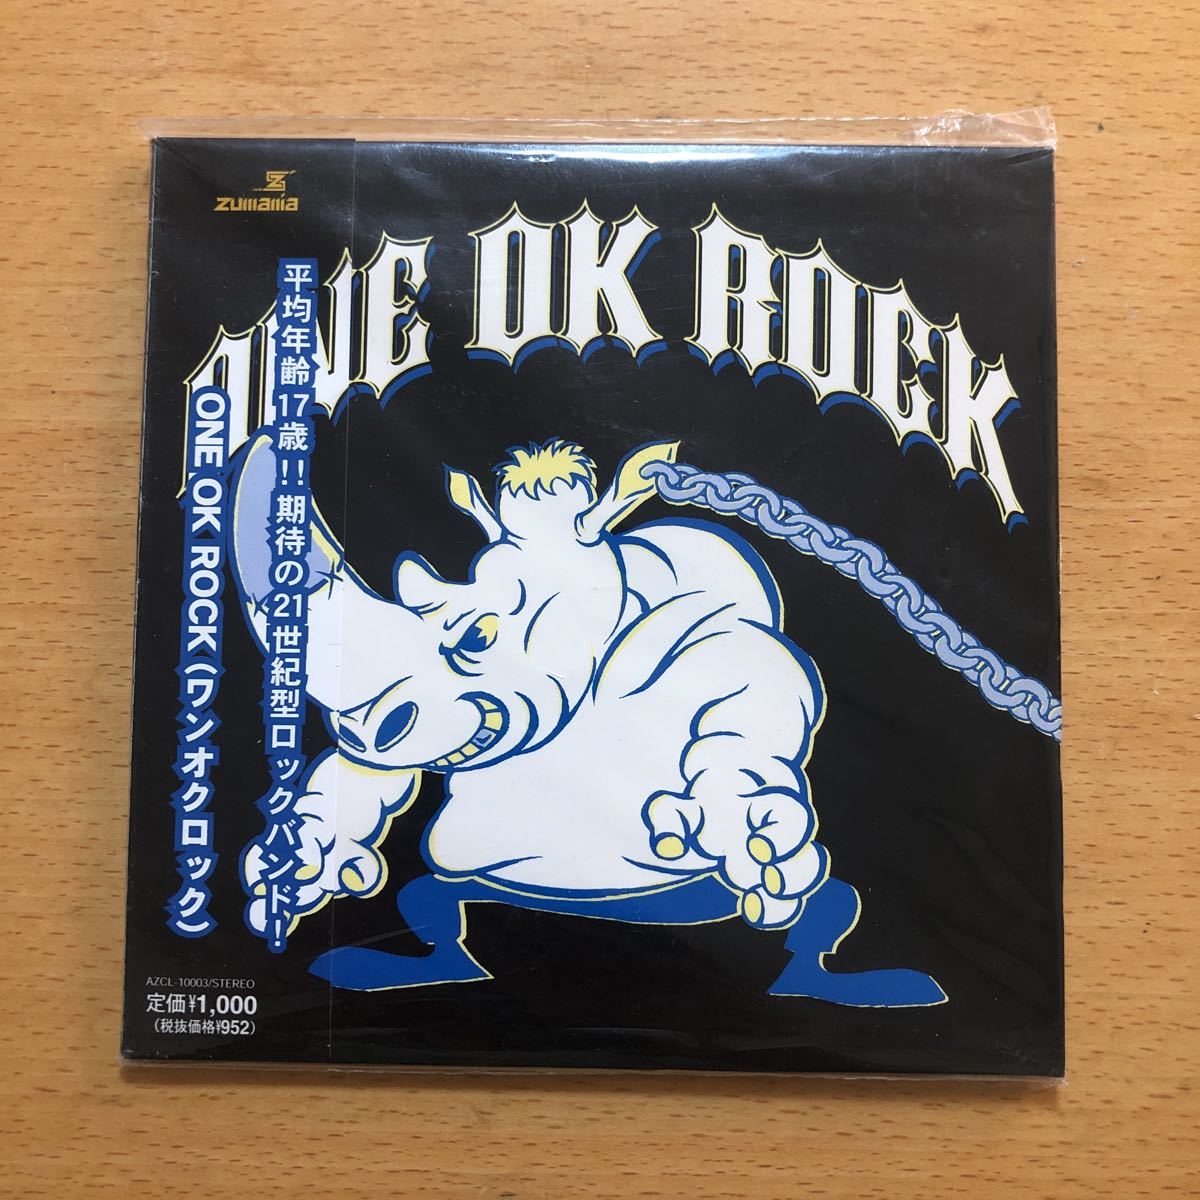 送料無料ONE OK ROCK『ONE OK ROCK』インディーズ盤CD☆レア盤☆帯付 